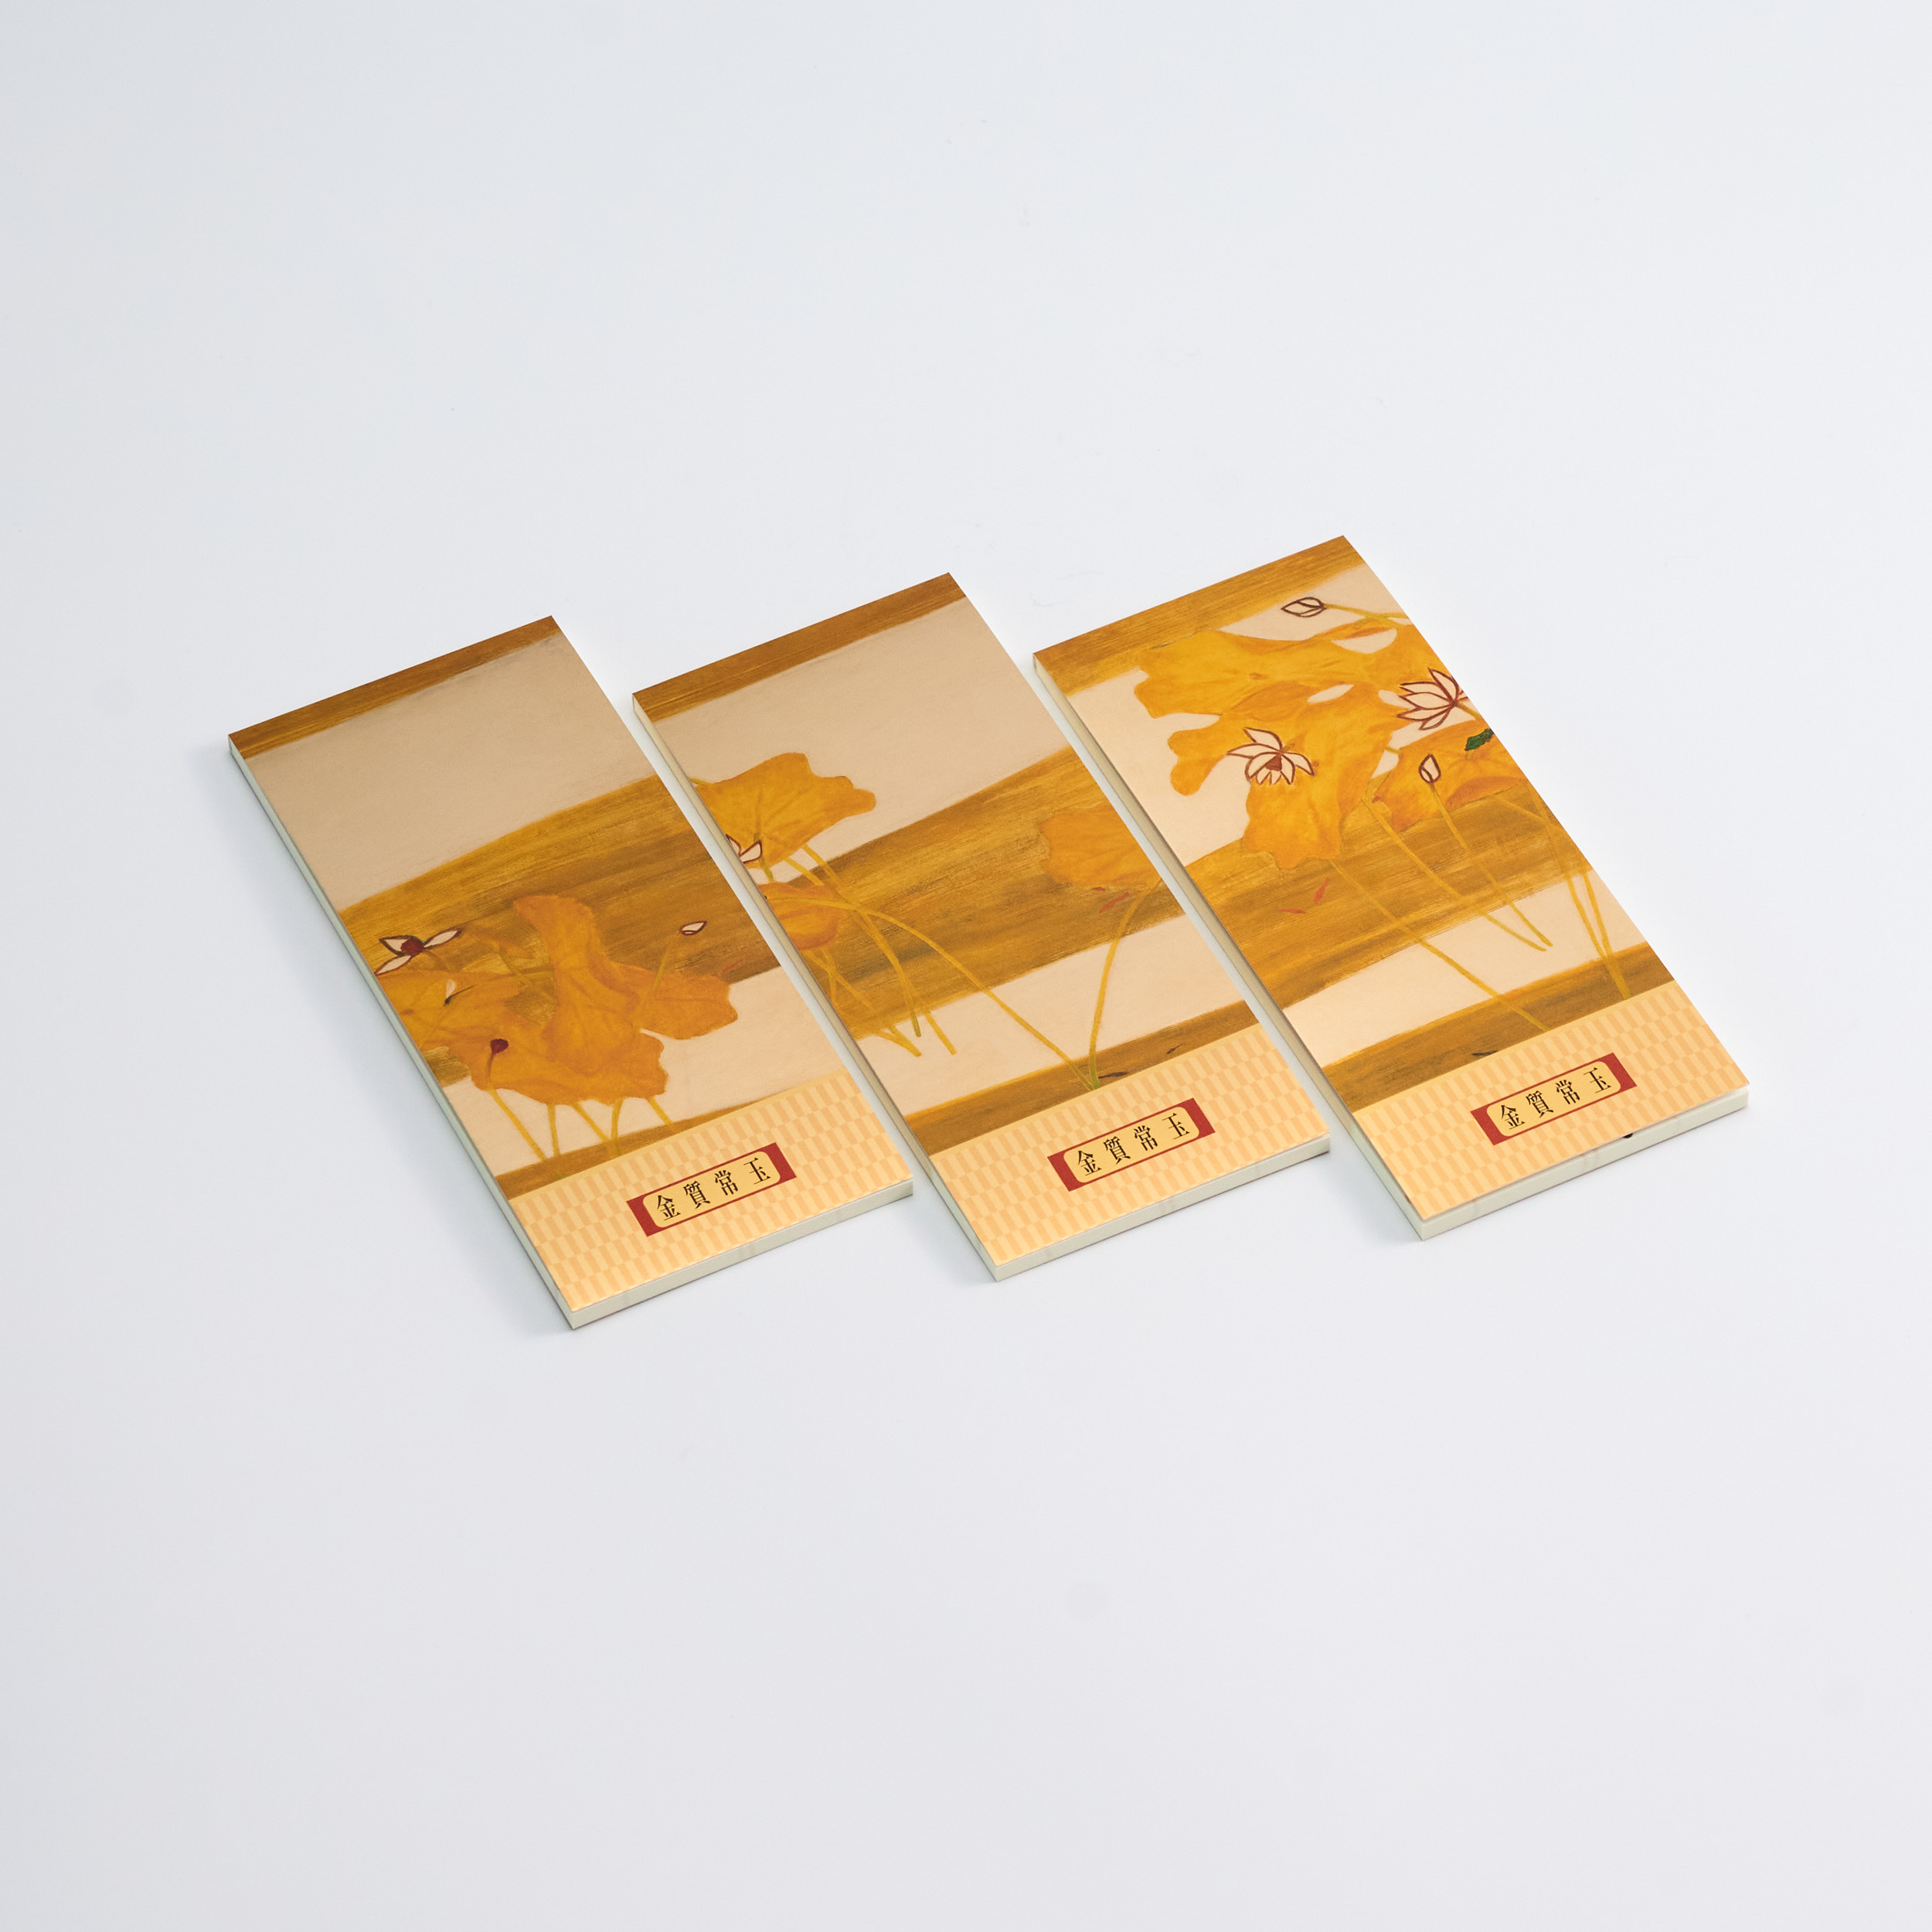 金質常玉手箋禮盒-荷花  Sanyu Golden Treasures Notepad Giftbox-Lotus